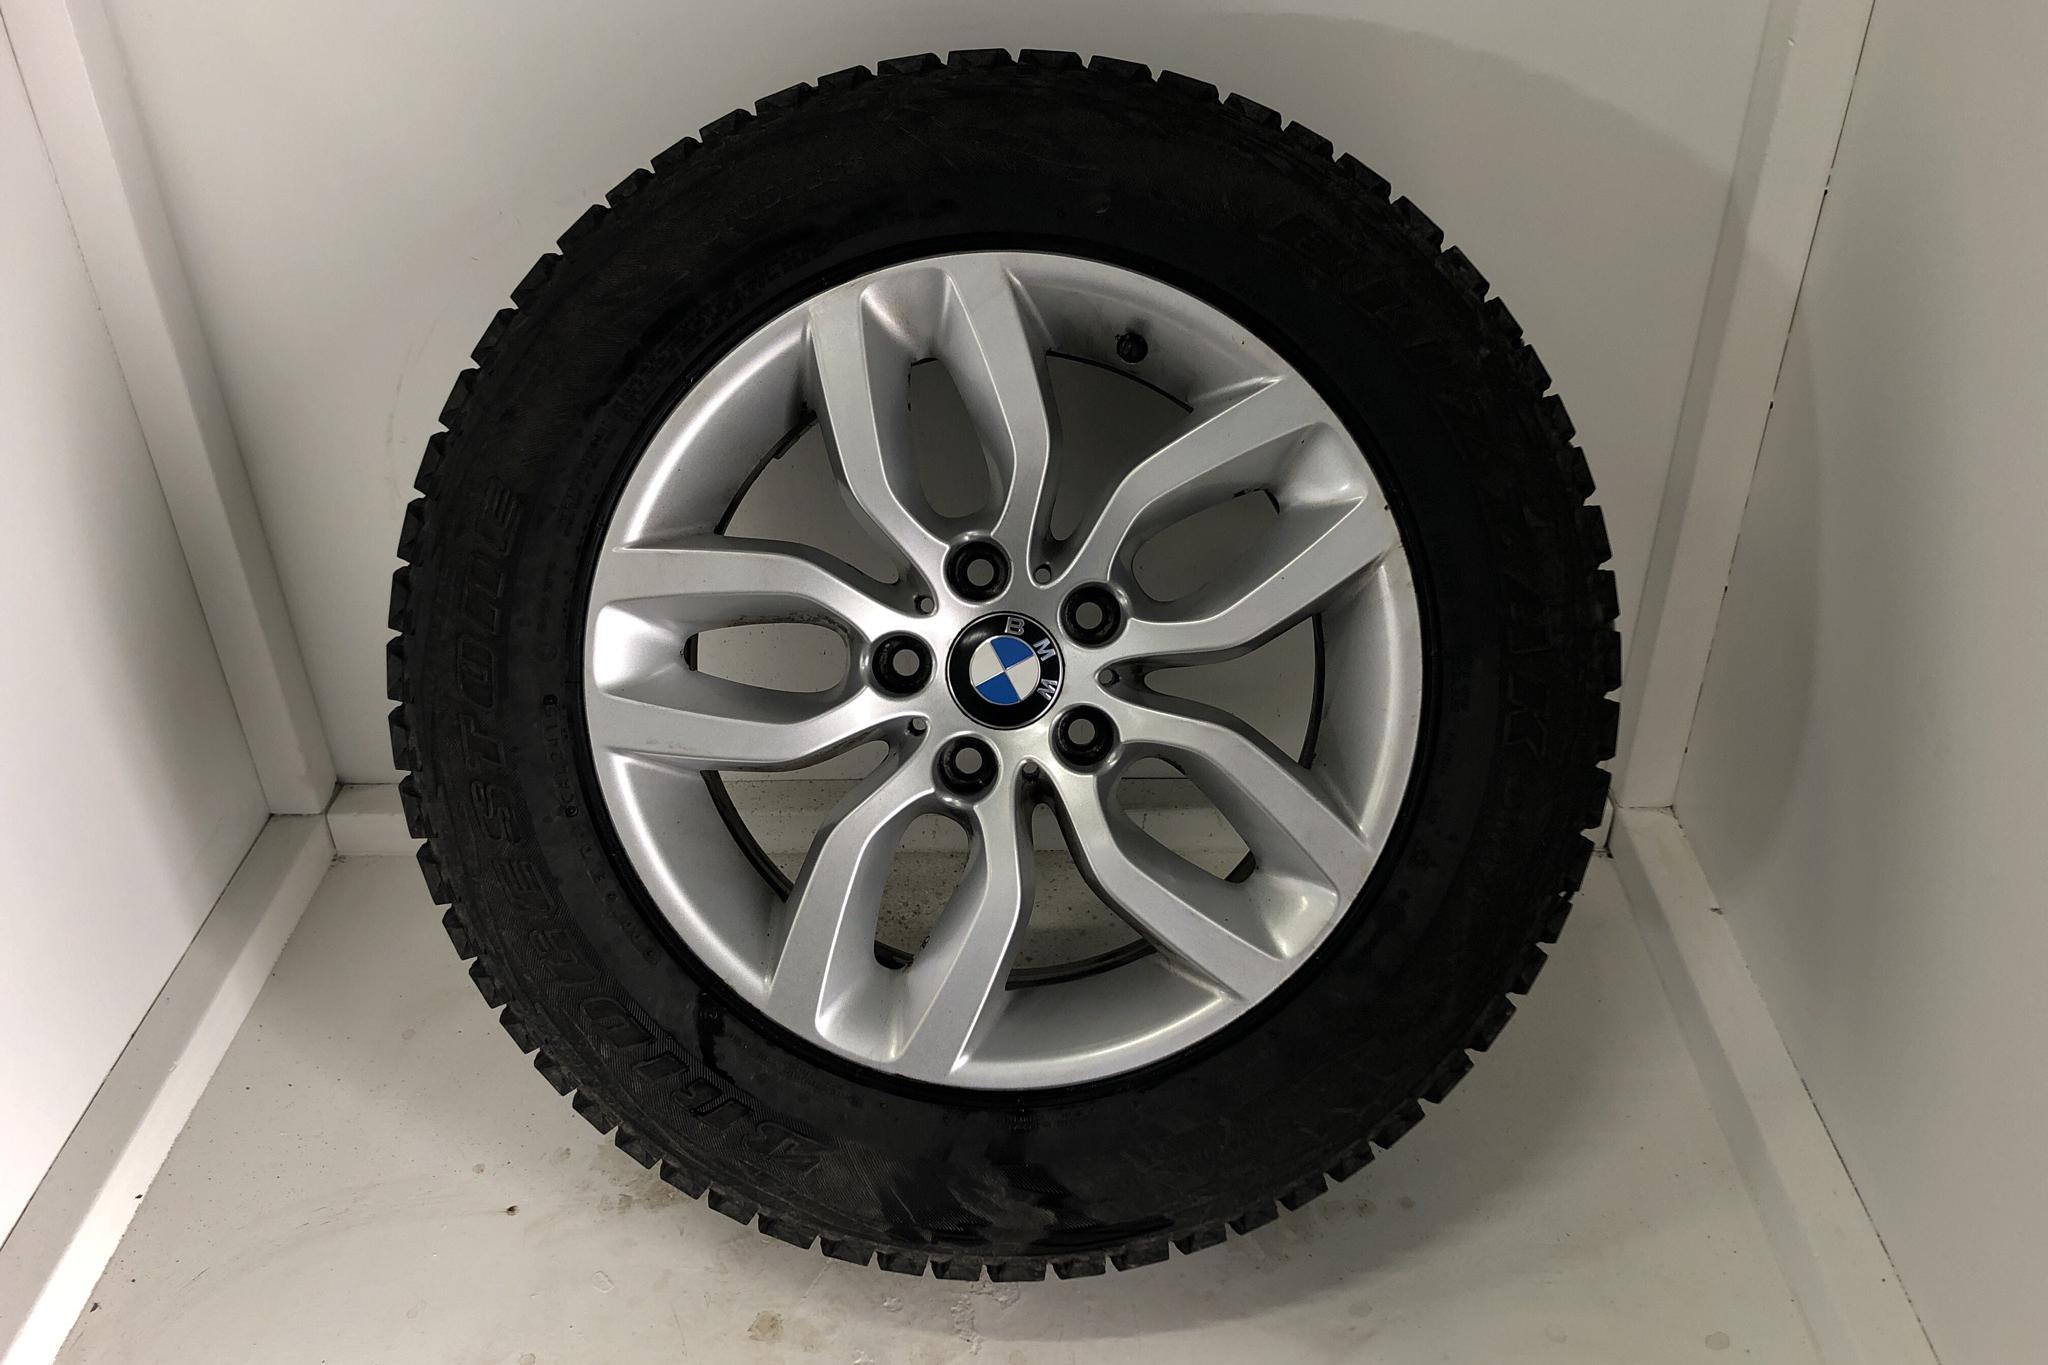 BMW X4 xDrive 20d, F26 (190hk) - 6 775 mil - Automat - svart - 2017